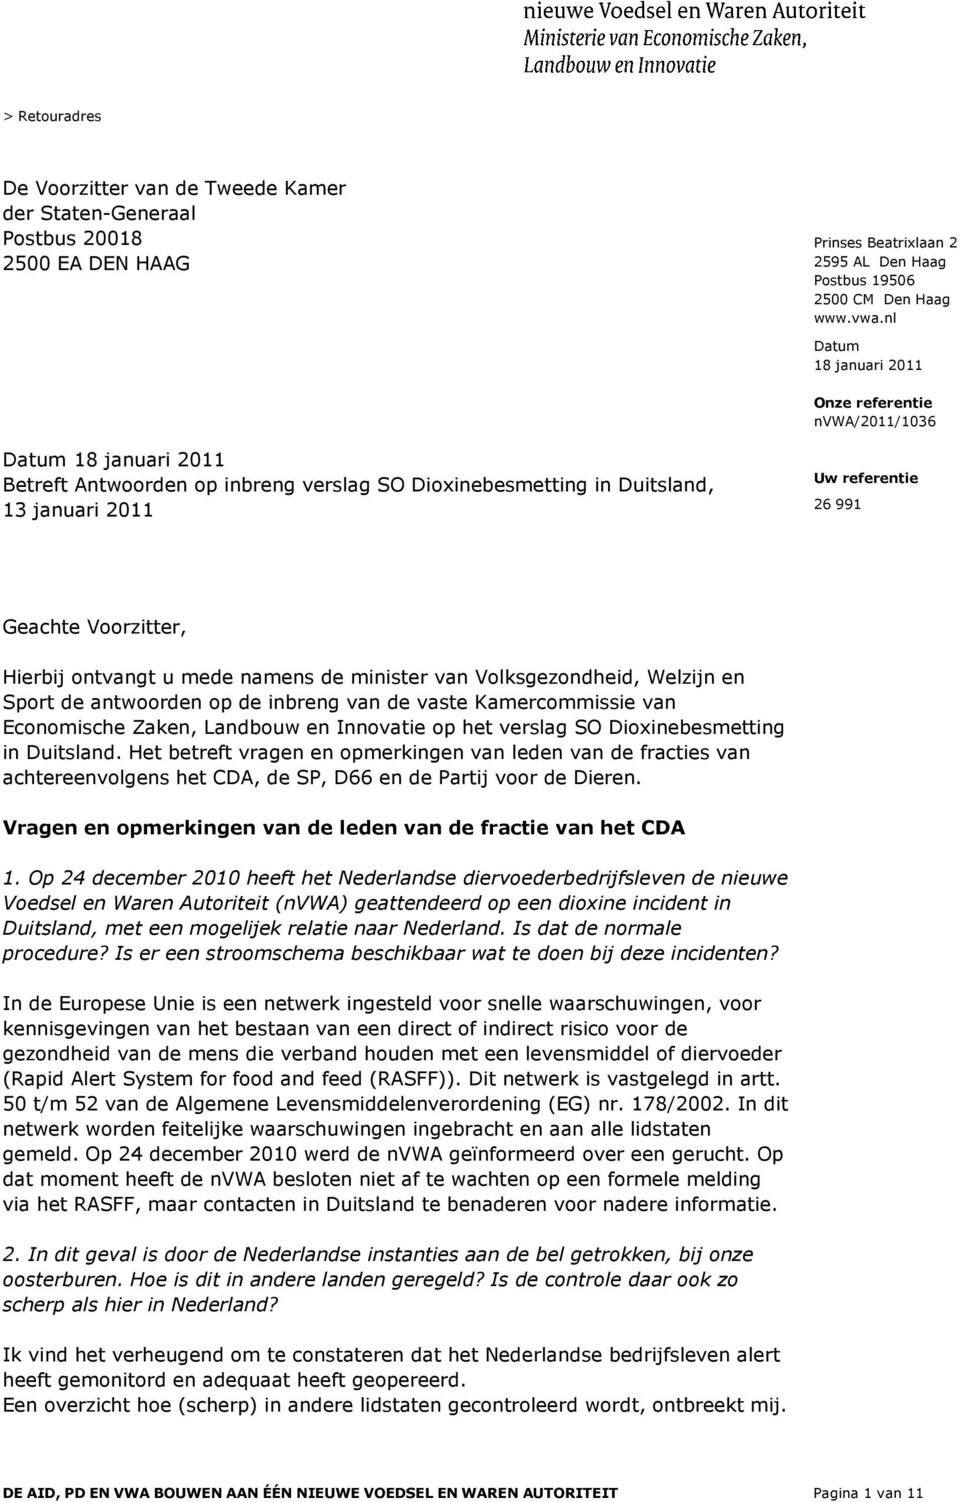 Welzijn en Sport de antwoorden op de inbreng van de vaste Kamercommissie van Economische Zaken, Landbouw en Innovatie op het verslag SO Dioxinebesmetting in Duitsland.